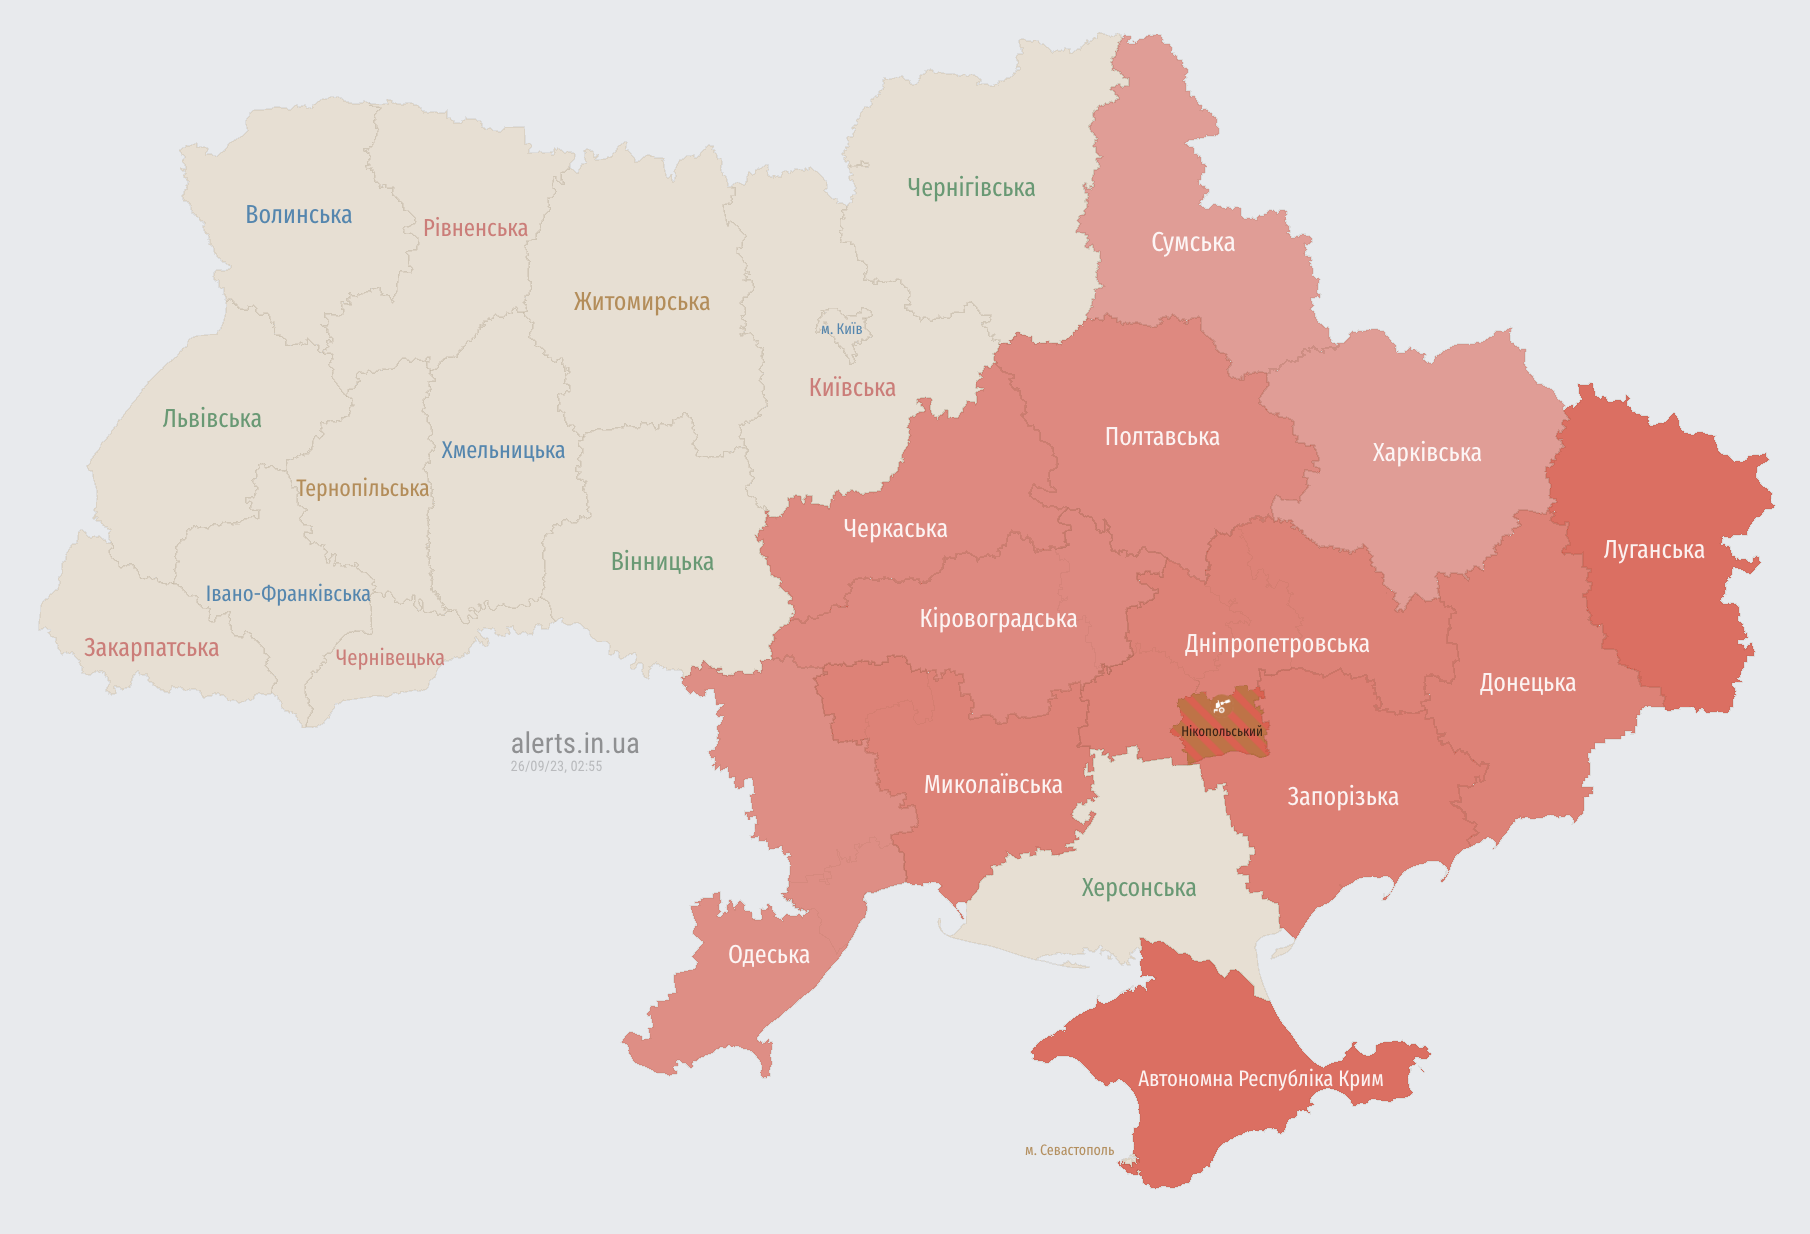 Воздушная тревога на юго-востоке и в центре Украины: есть угроза ударных БПЛА